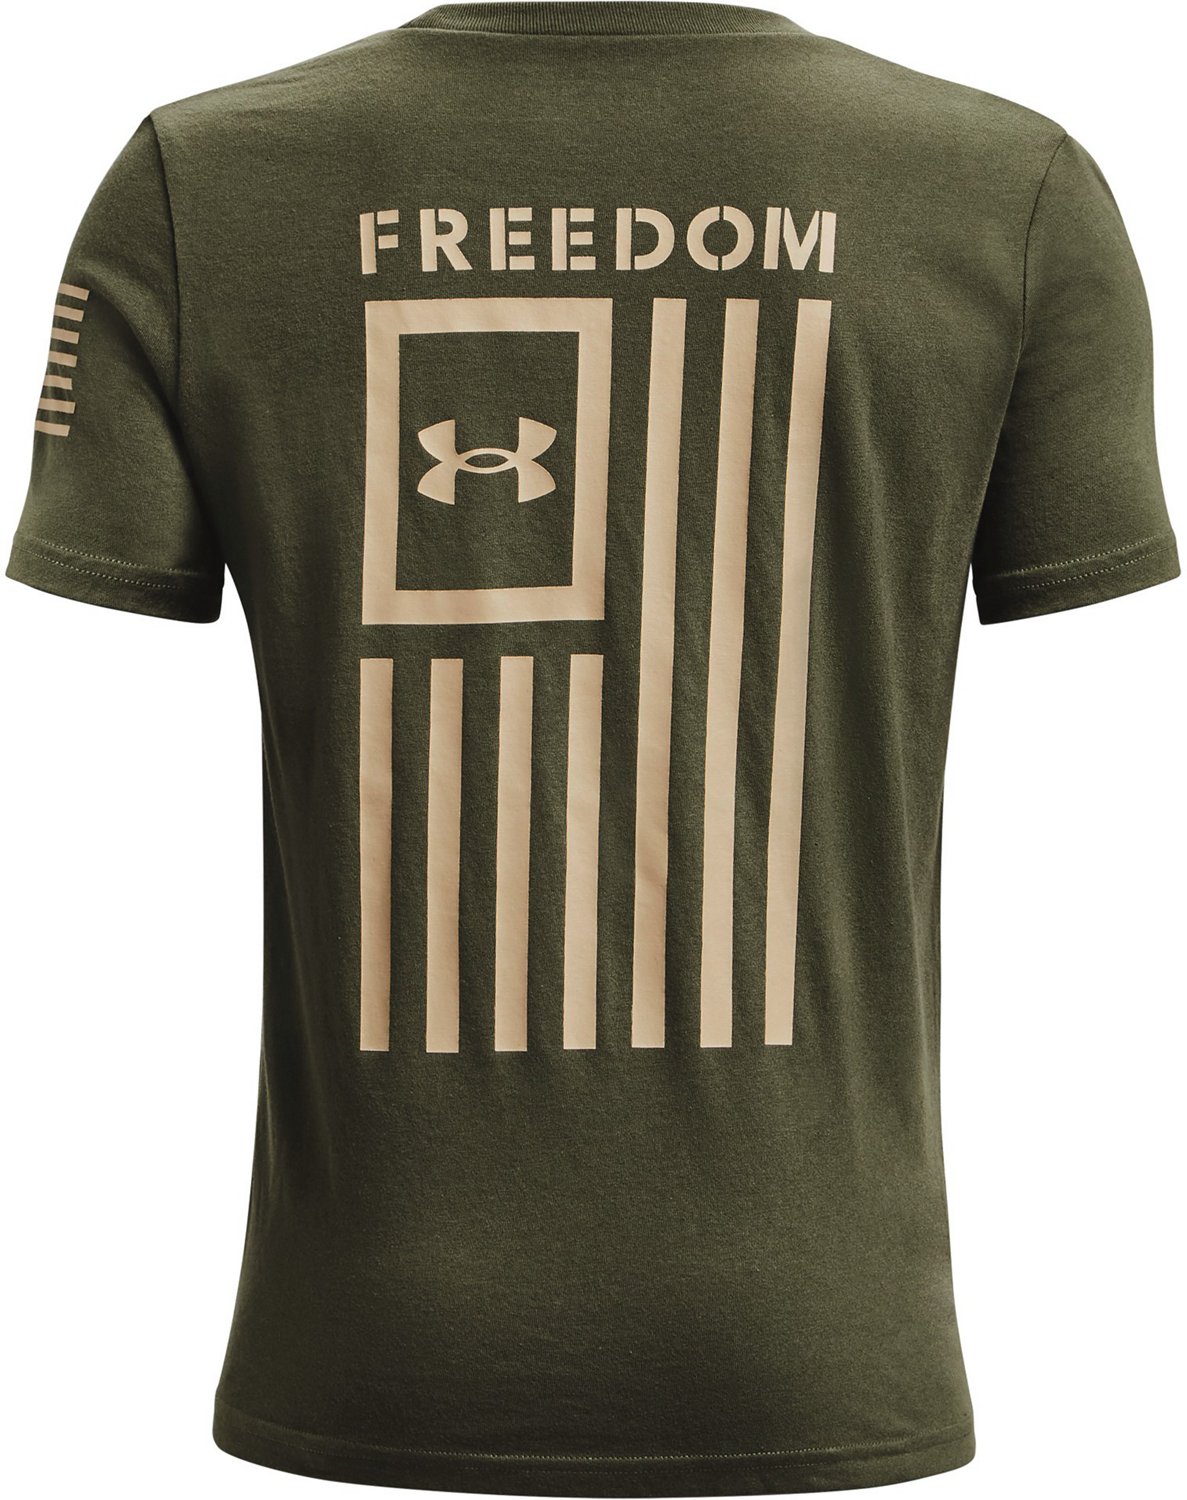 Under Armour Boys UA Freedom Flag Short Sleeve T-Shirt